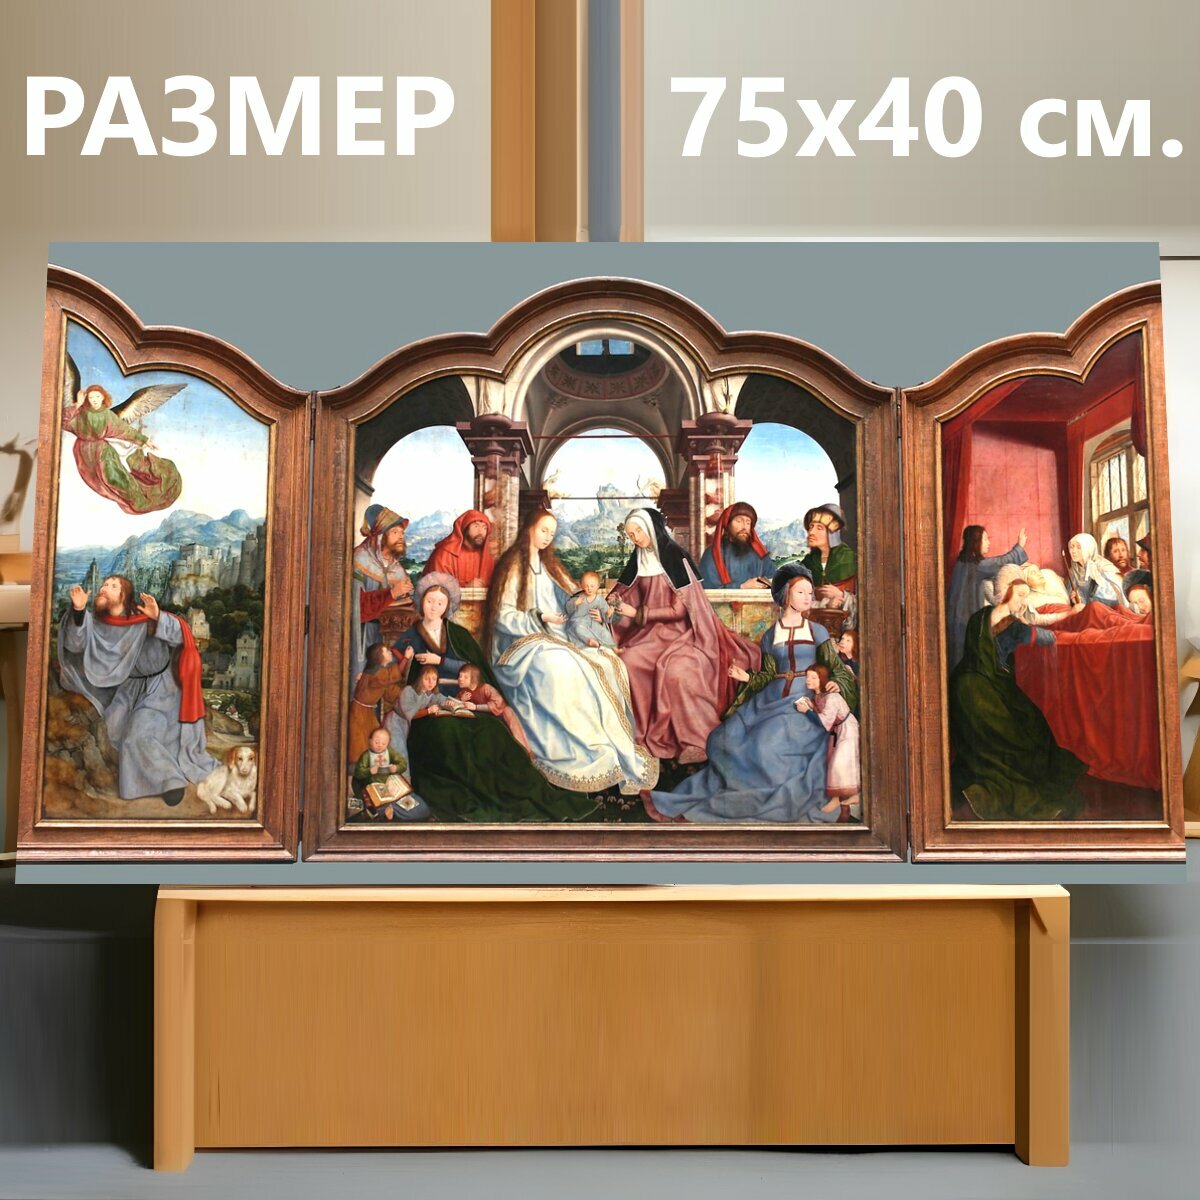 Картина на холсте "Триптих, полиптих, картина" на подрамнике 75х40 см. для интерьера